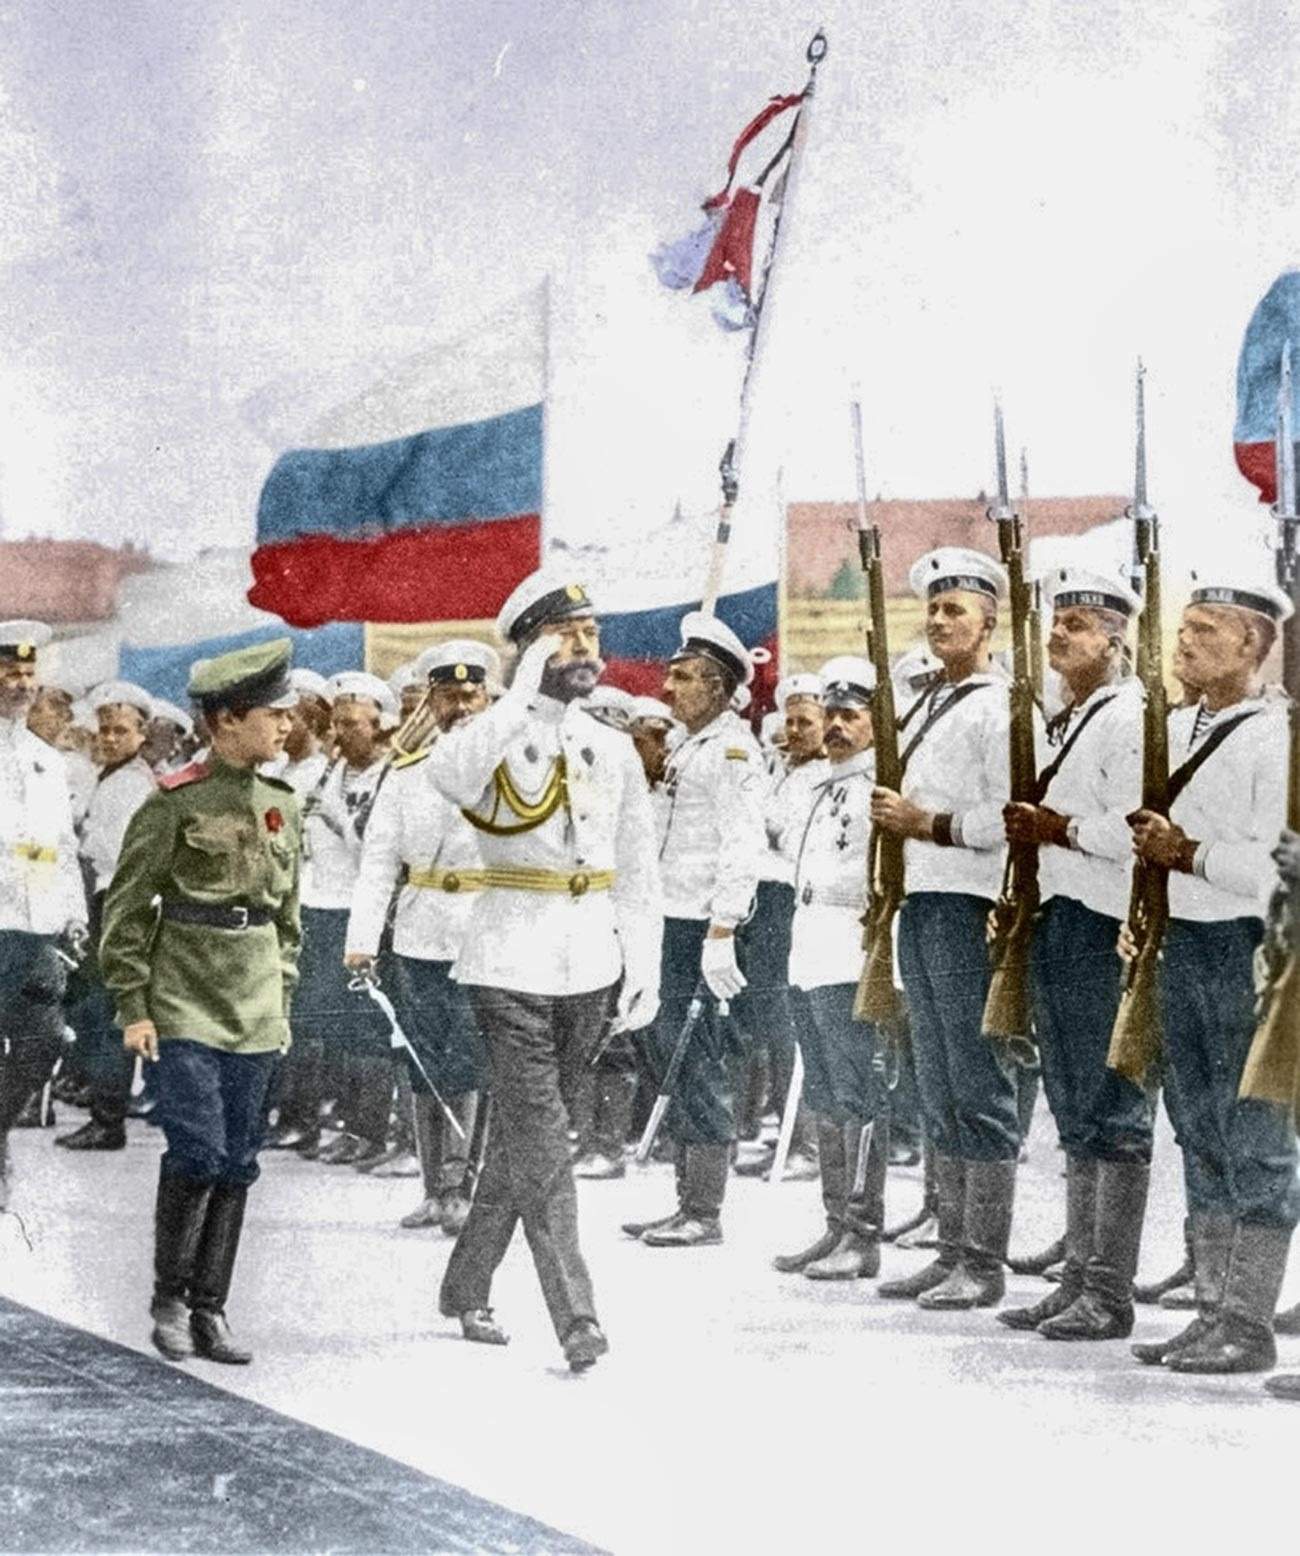 Что означают цвета российского флага?